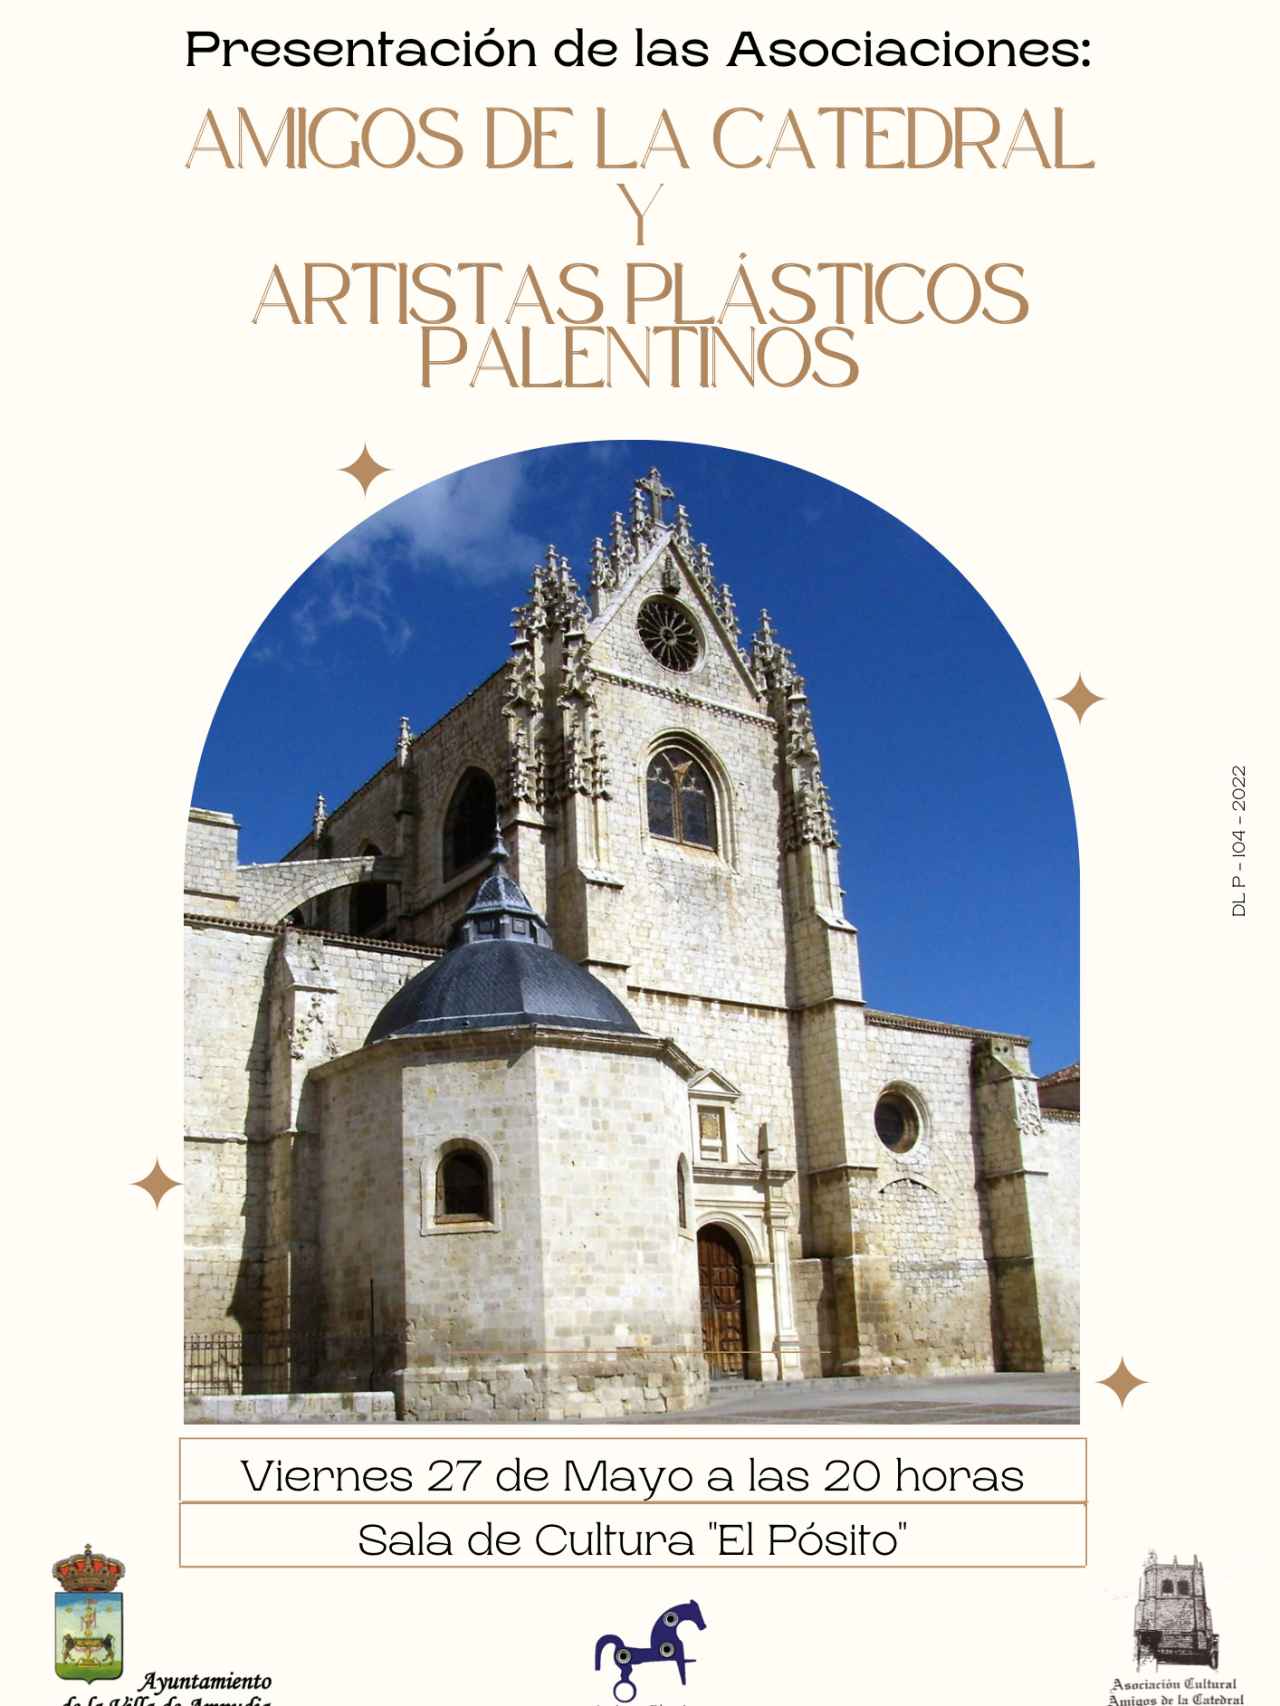 Presentación de las Asociaciones: amigos de la catedral y artistas plásticos palentinos